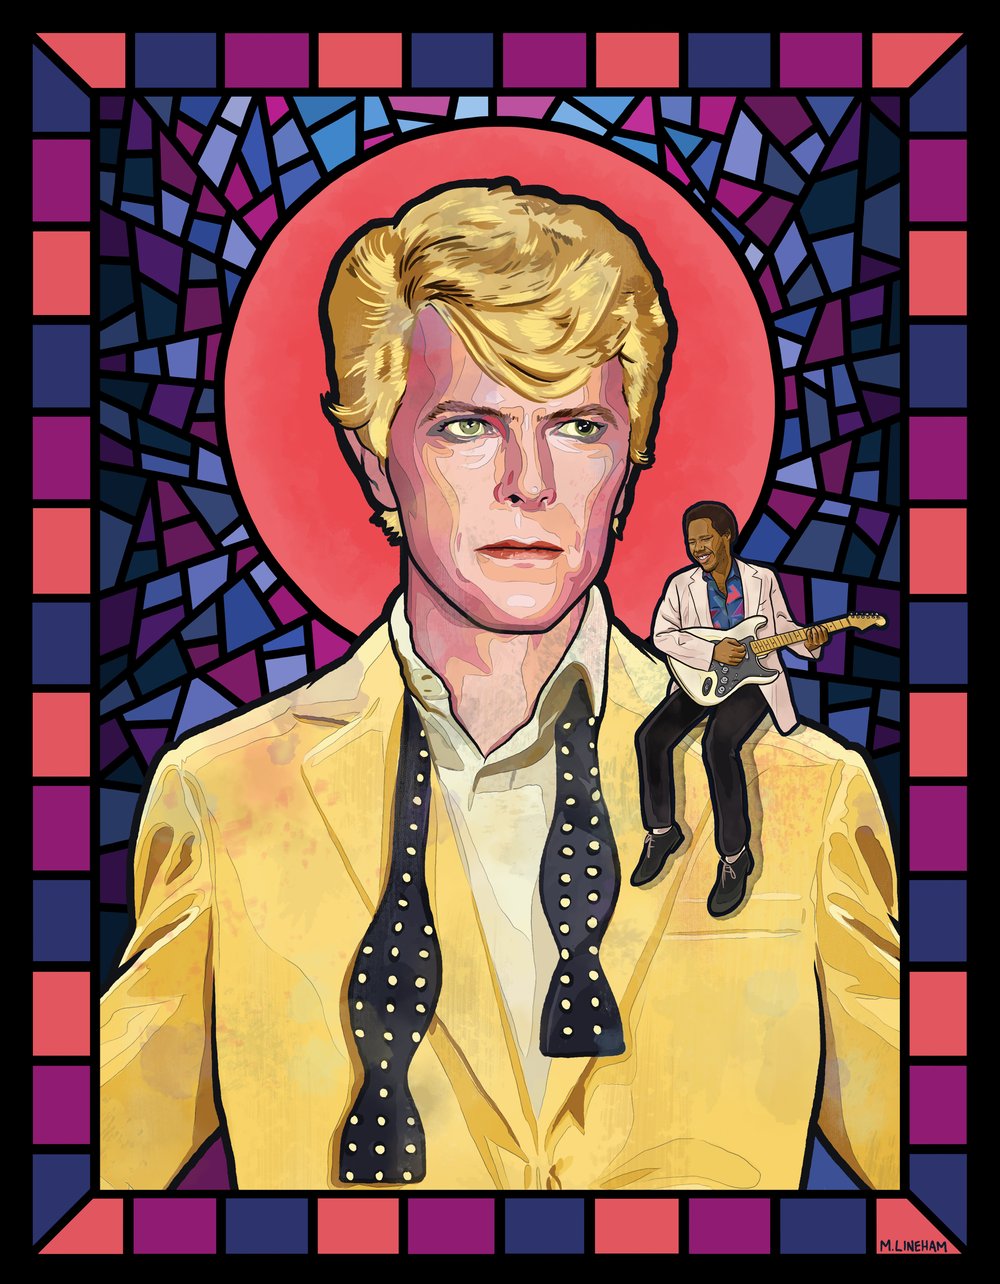 Saint Bowie ("Let's Dance" Era)